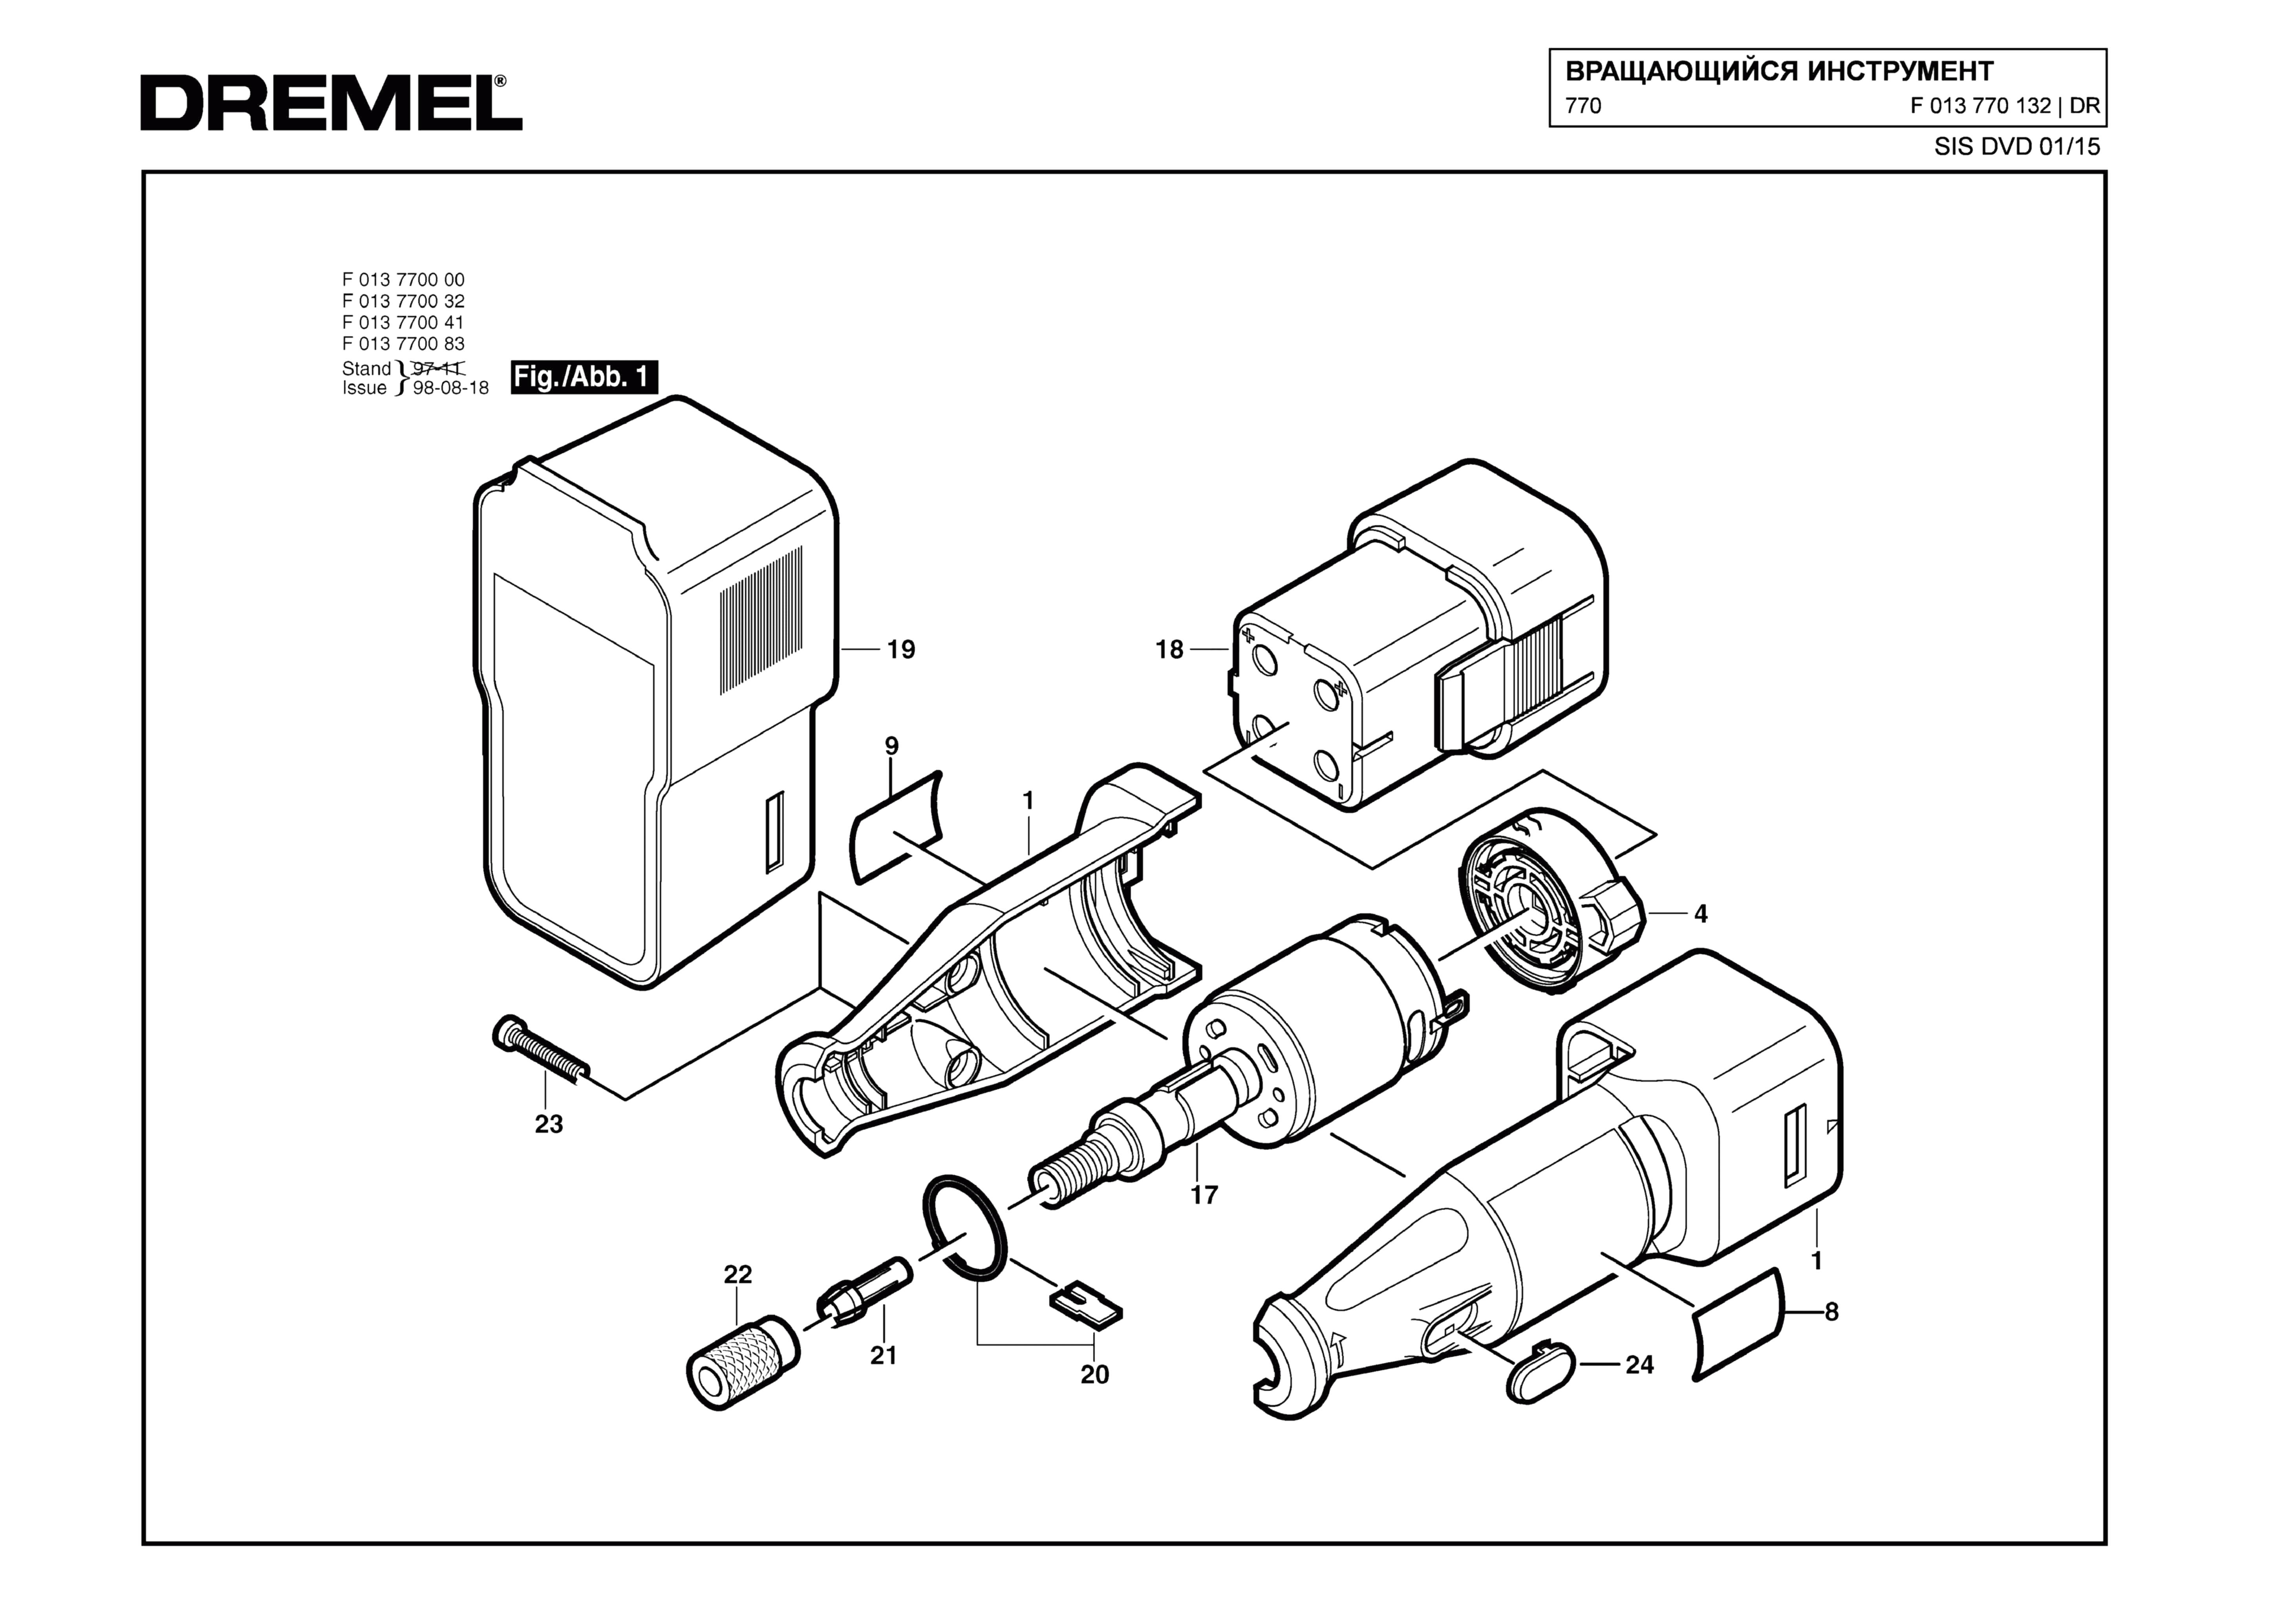 Шлифовальная машина Dremel 770 (ТИП F013770132)